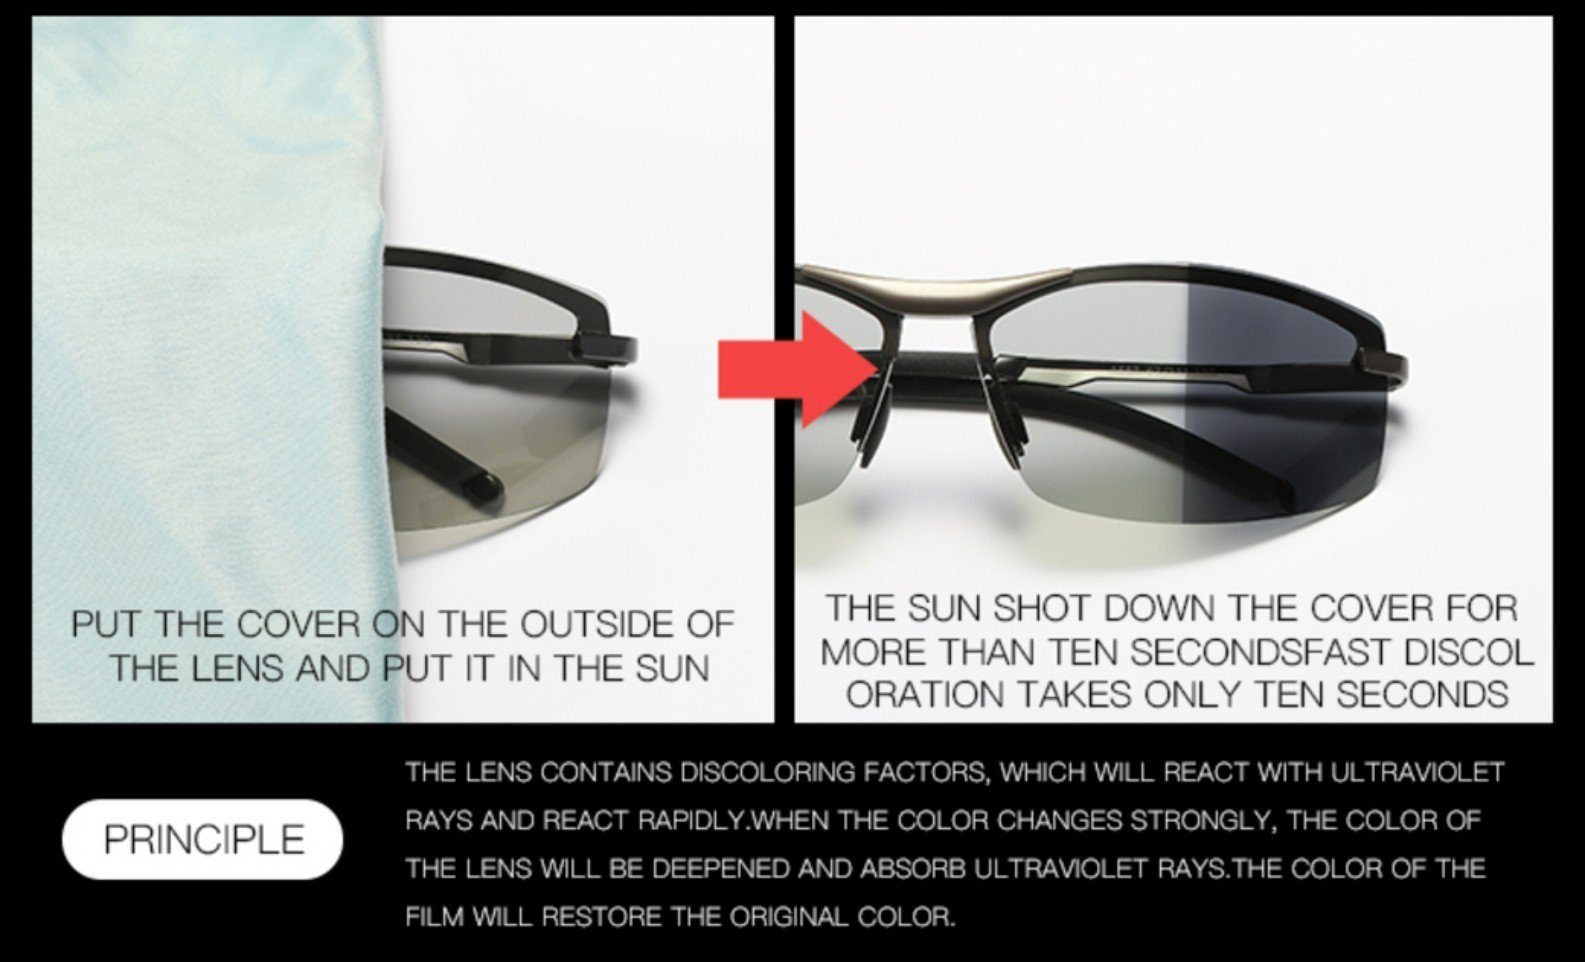 Leicht UV400 polarisiert Sonnenbrille 100% Schutz Herren Sportbrille silberschwarz Sonnenbrille PACIEA